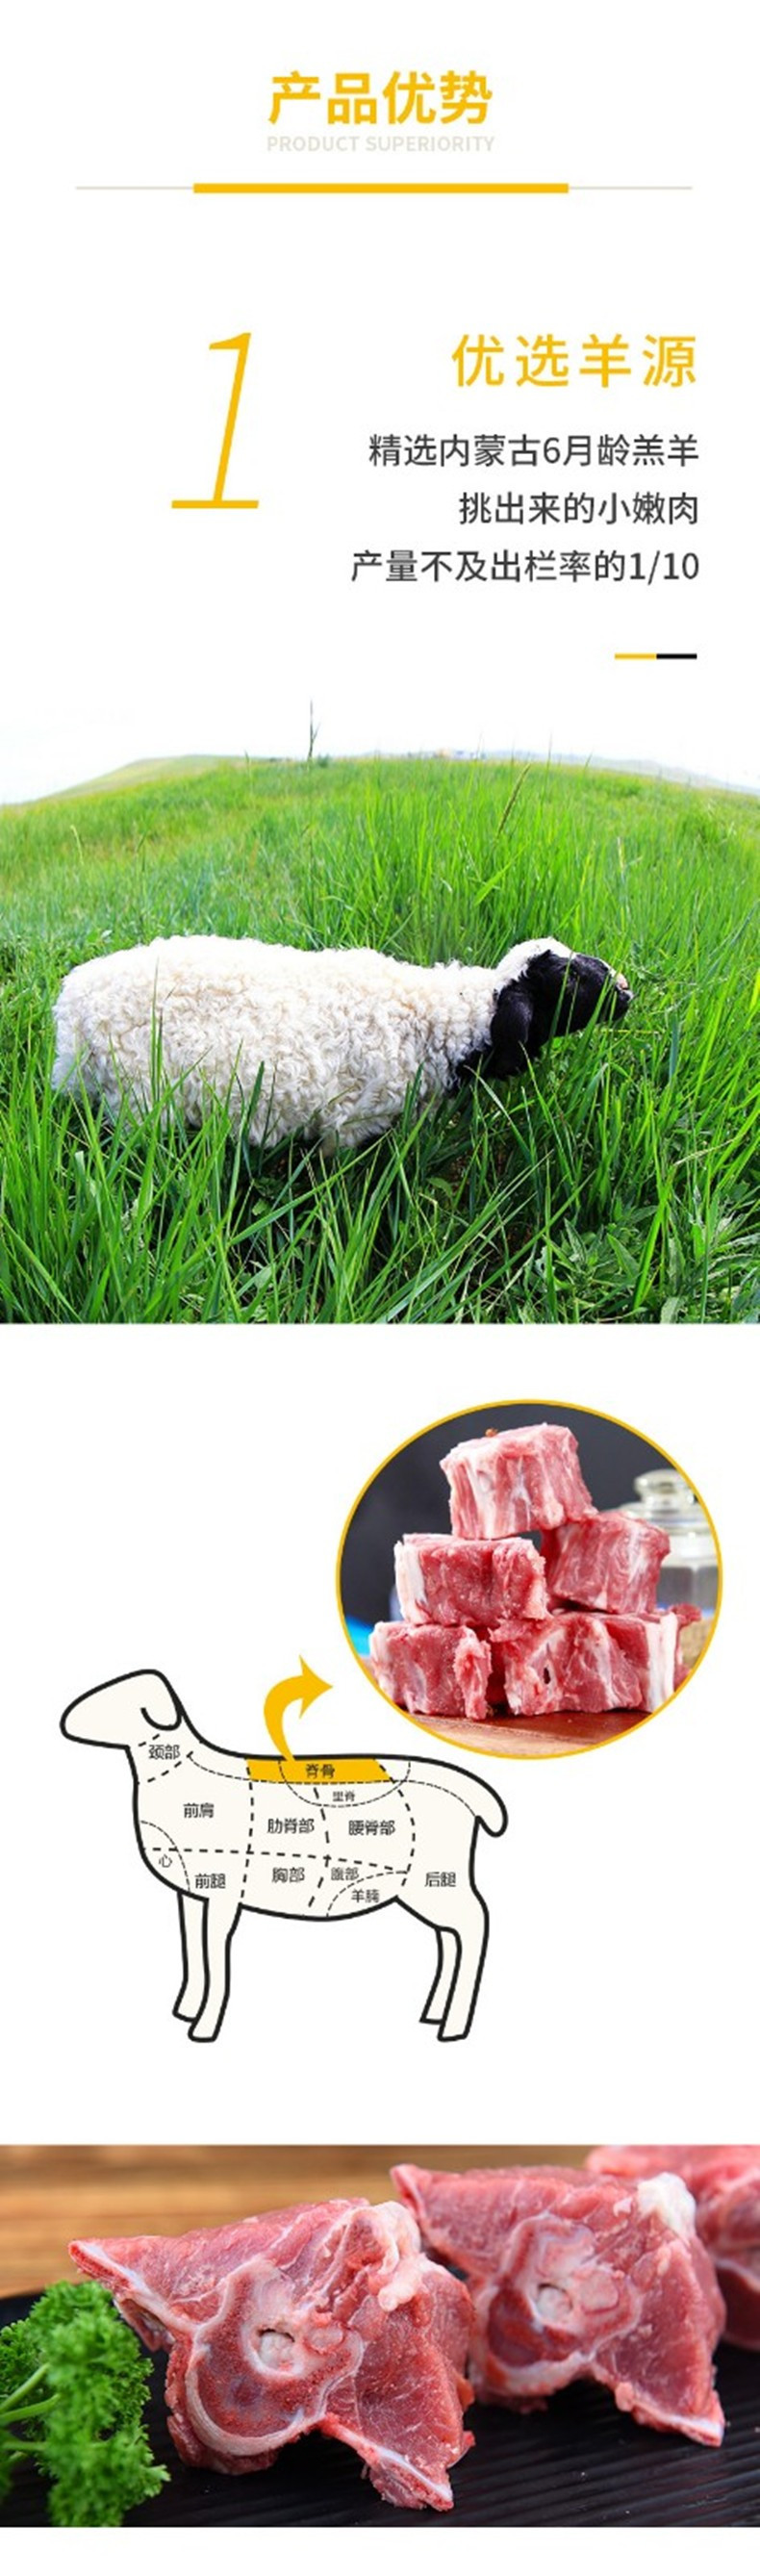 中国邮政 羊脊骨3斤 内蒙古羊蝎子 火锅食材炖煮食材 内蒙古羊肉羊骨头